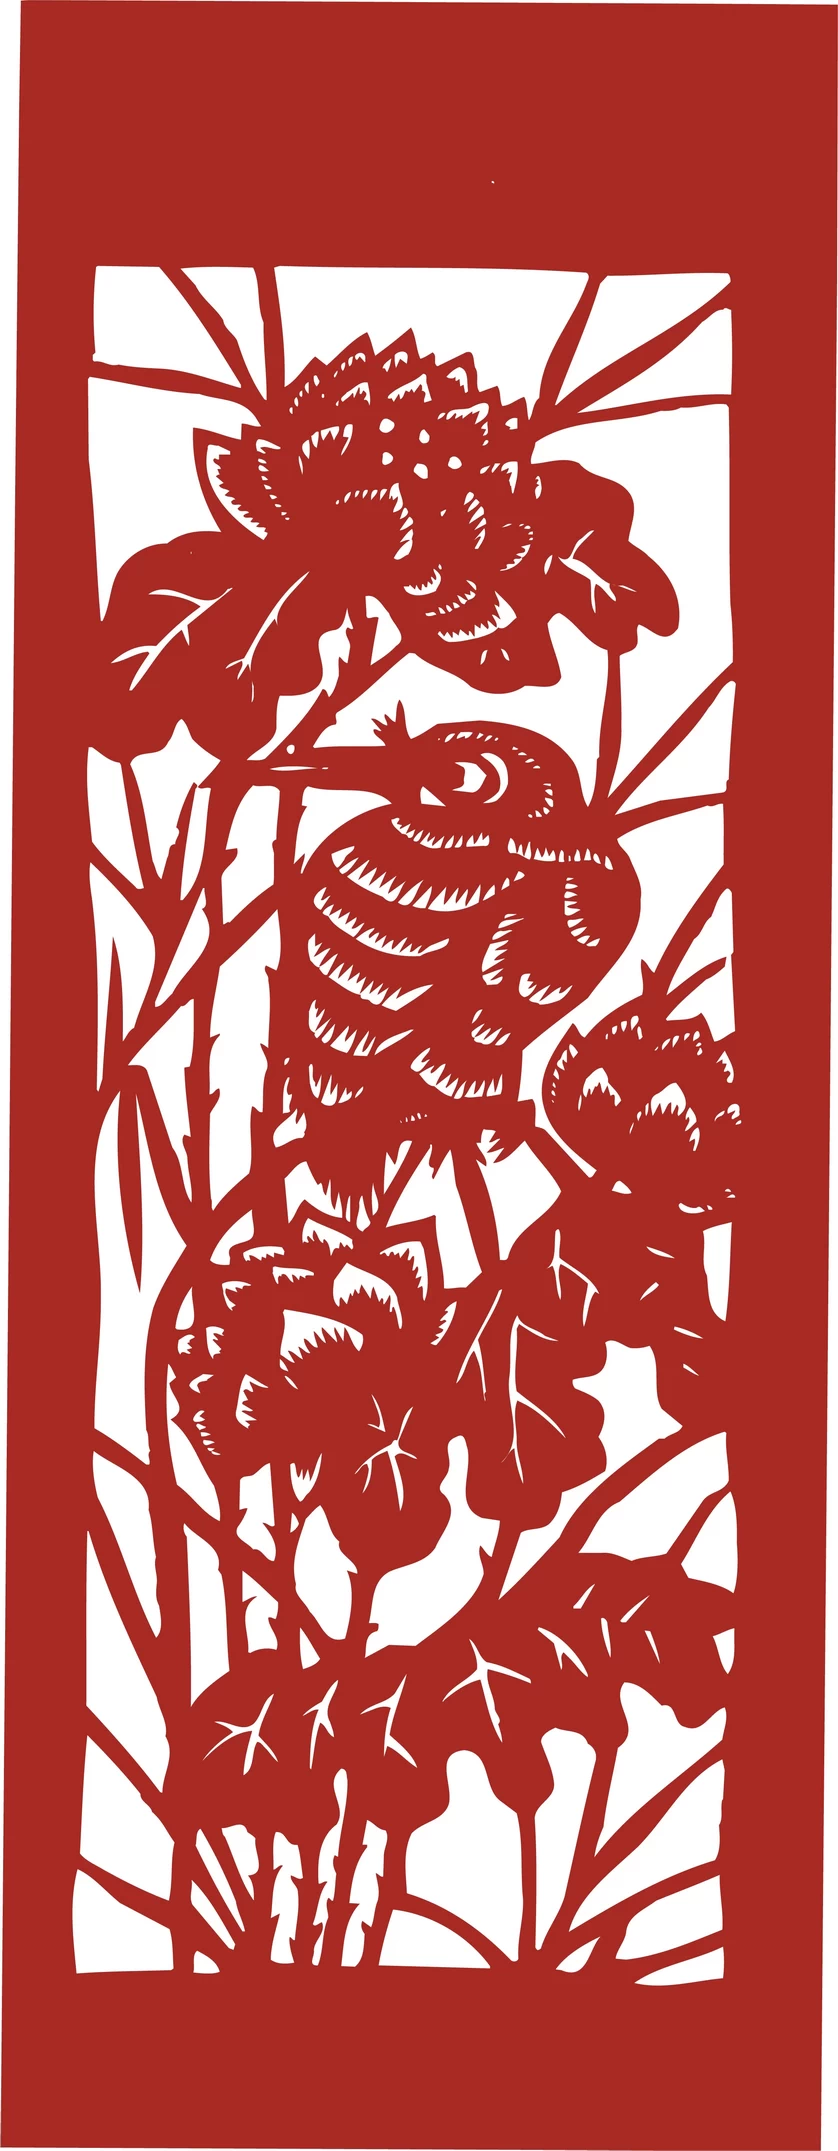 中国风中式传统喜庆民俗人物动物窗花剪纸插画边框AI矢量PNG素材【976】